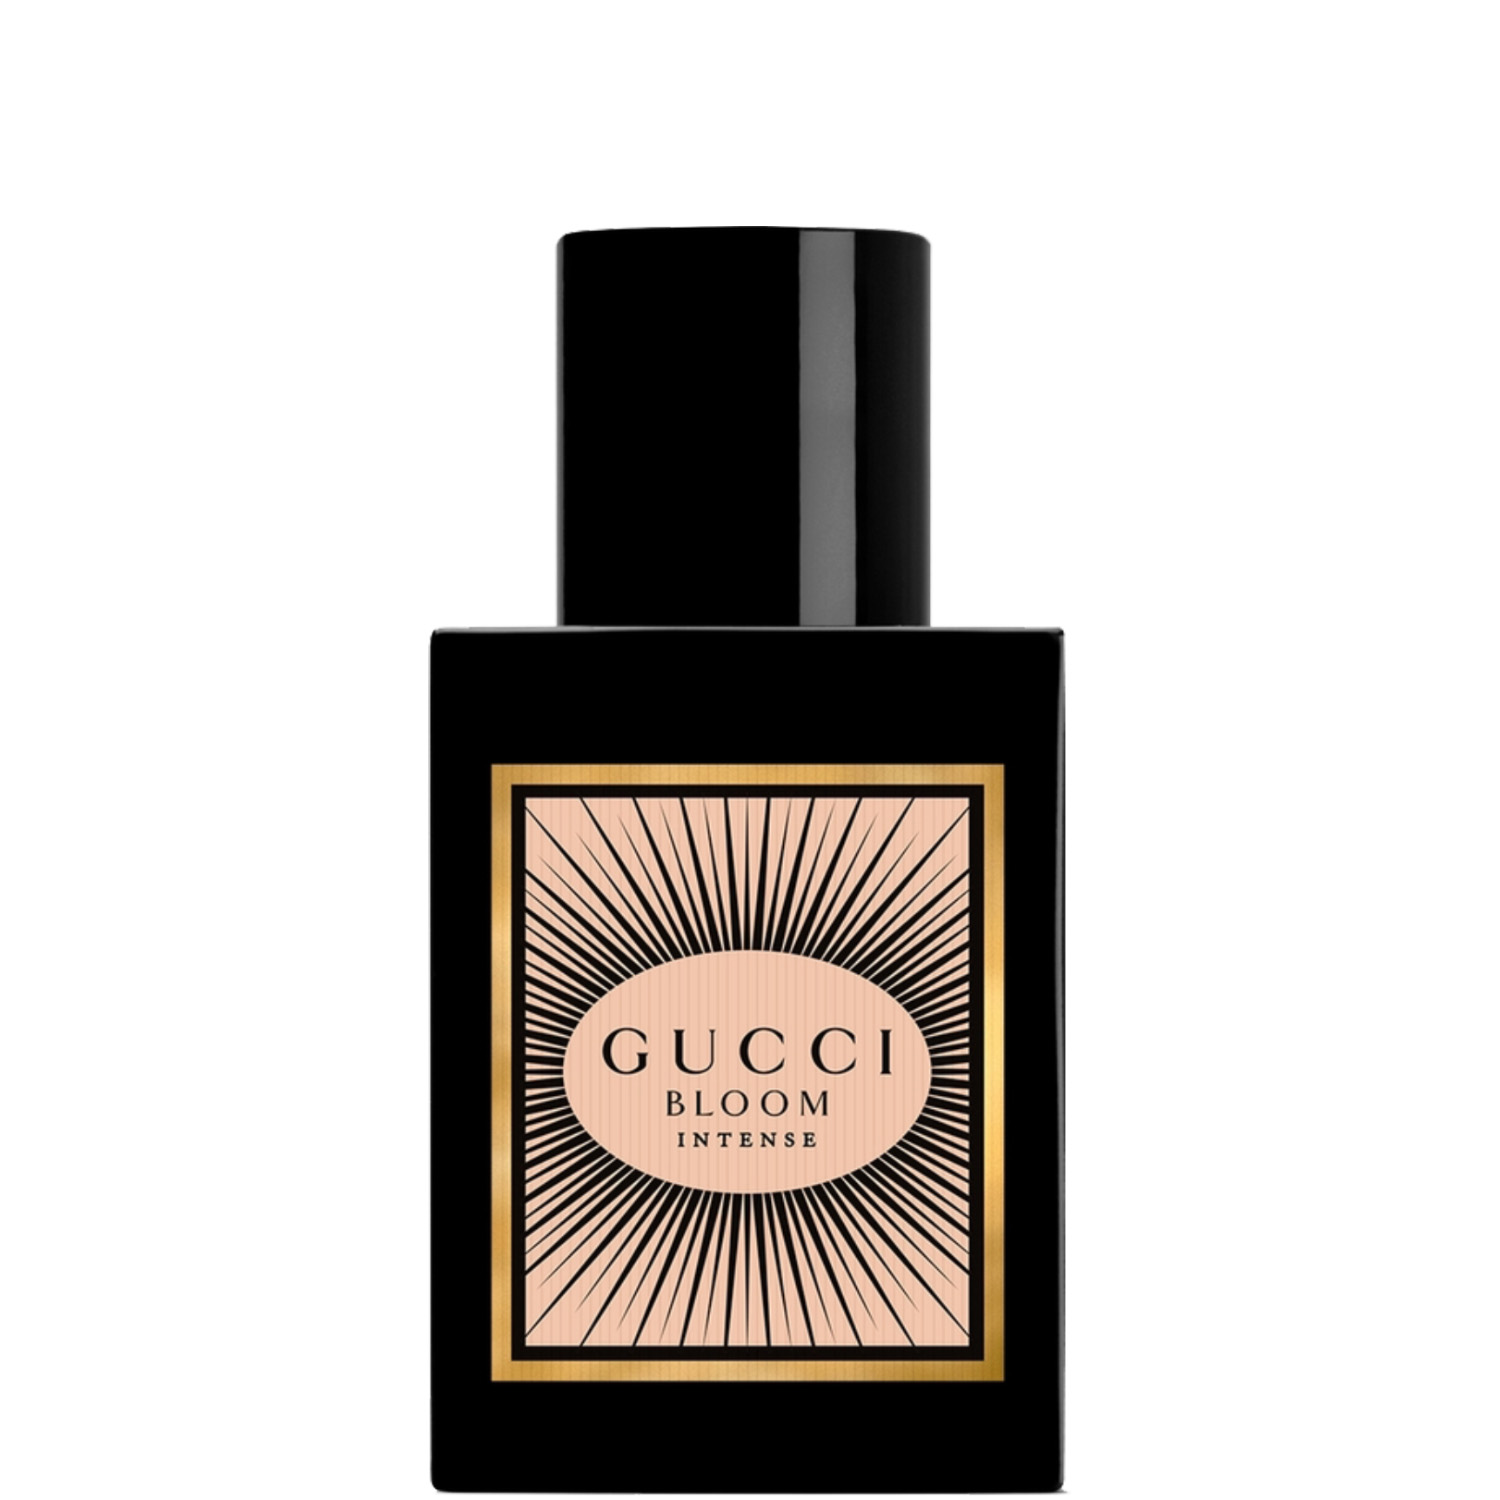 Gucci Bloom Intense Eau de Parfum 30ml